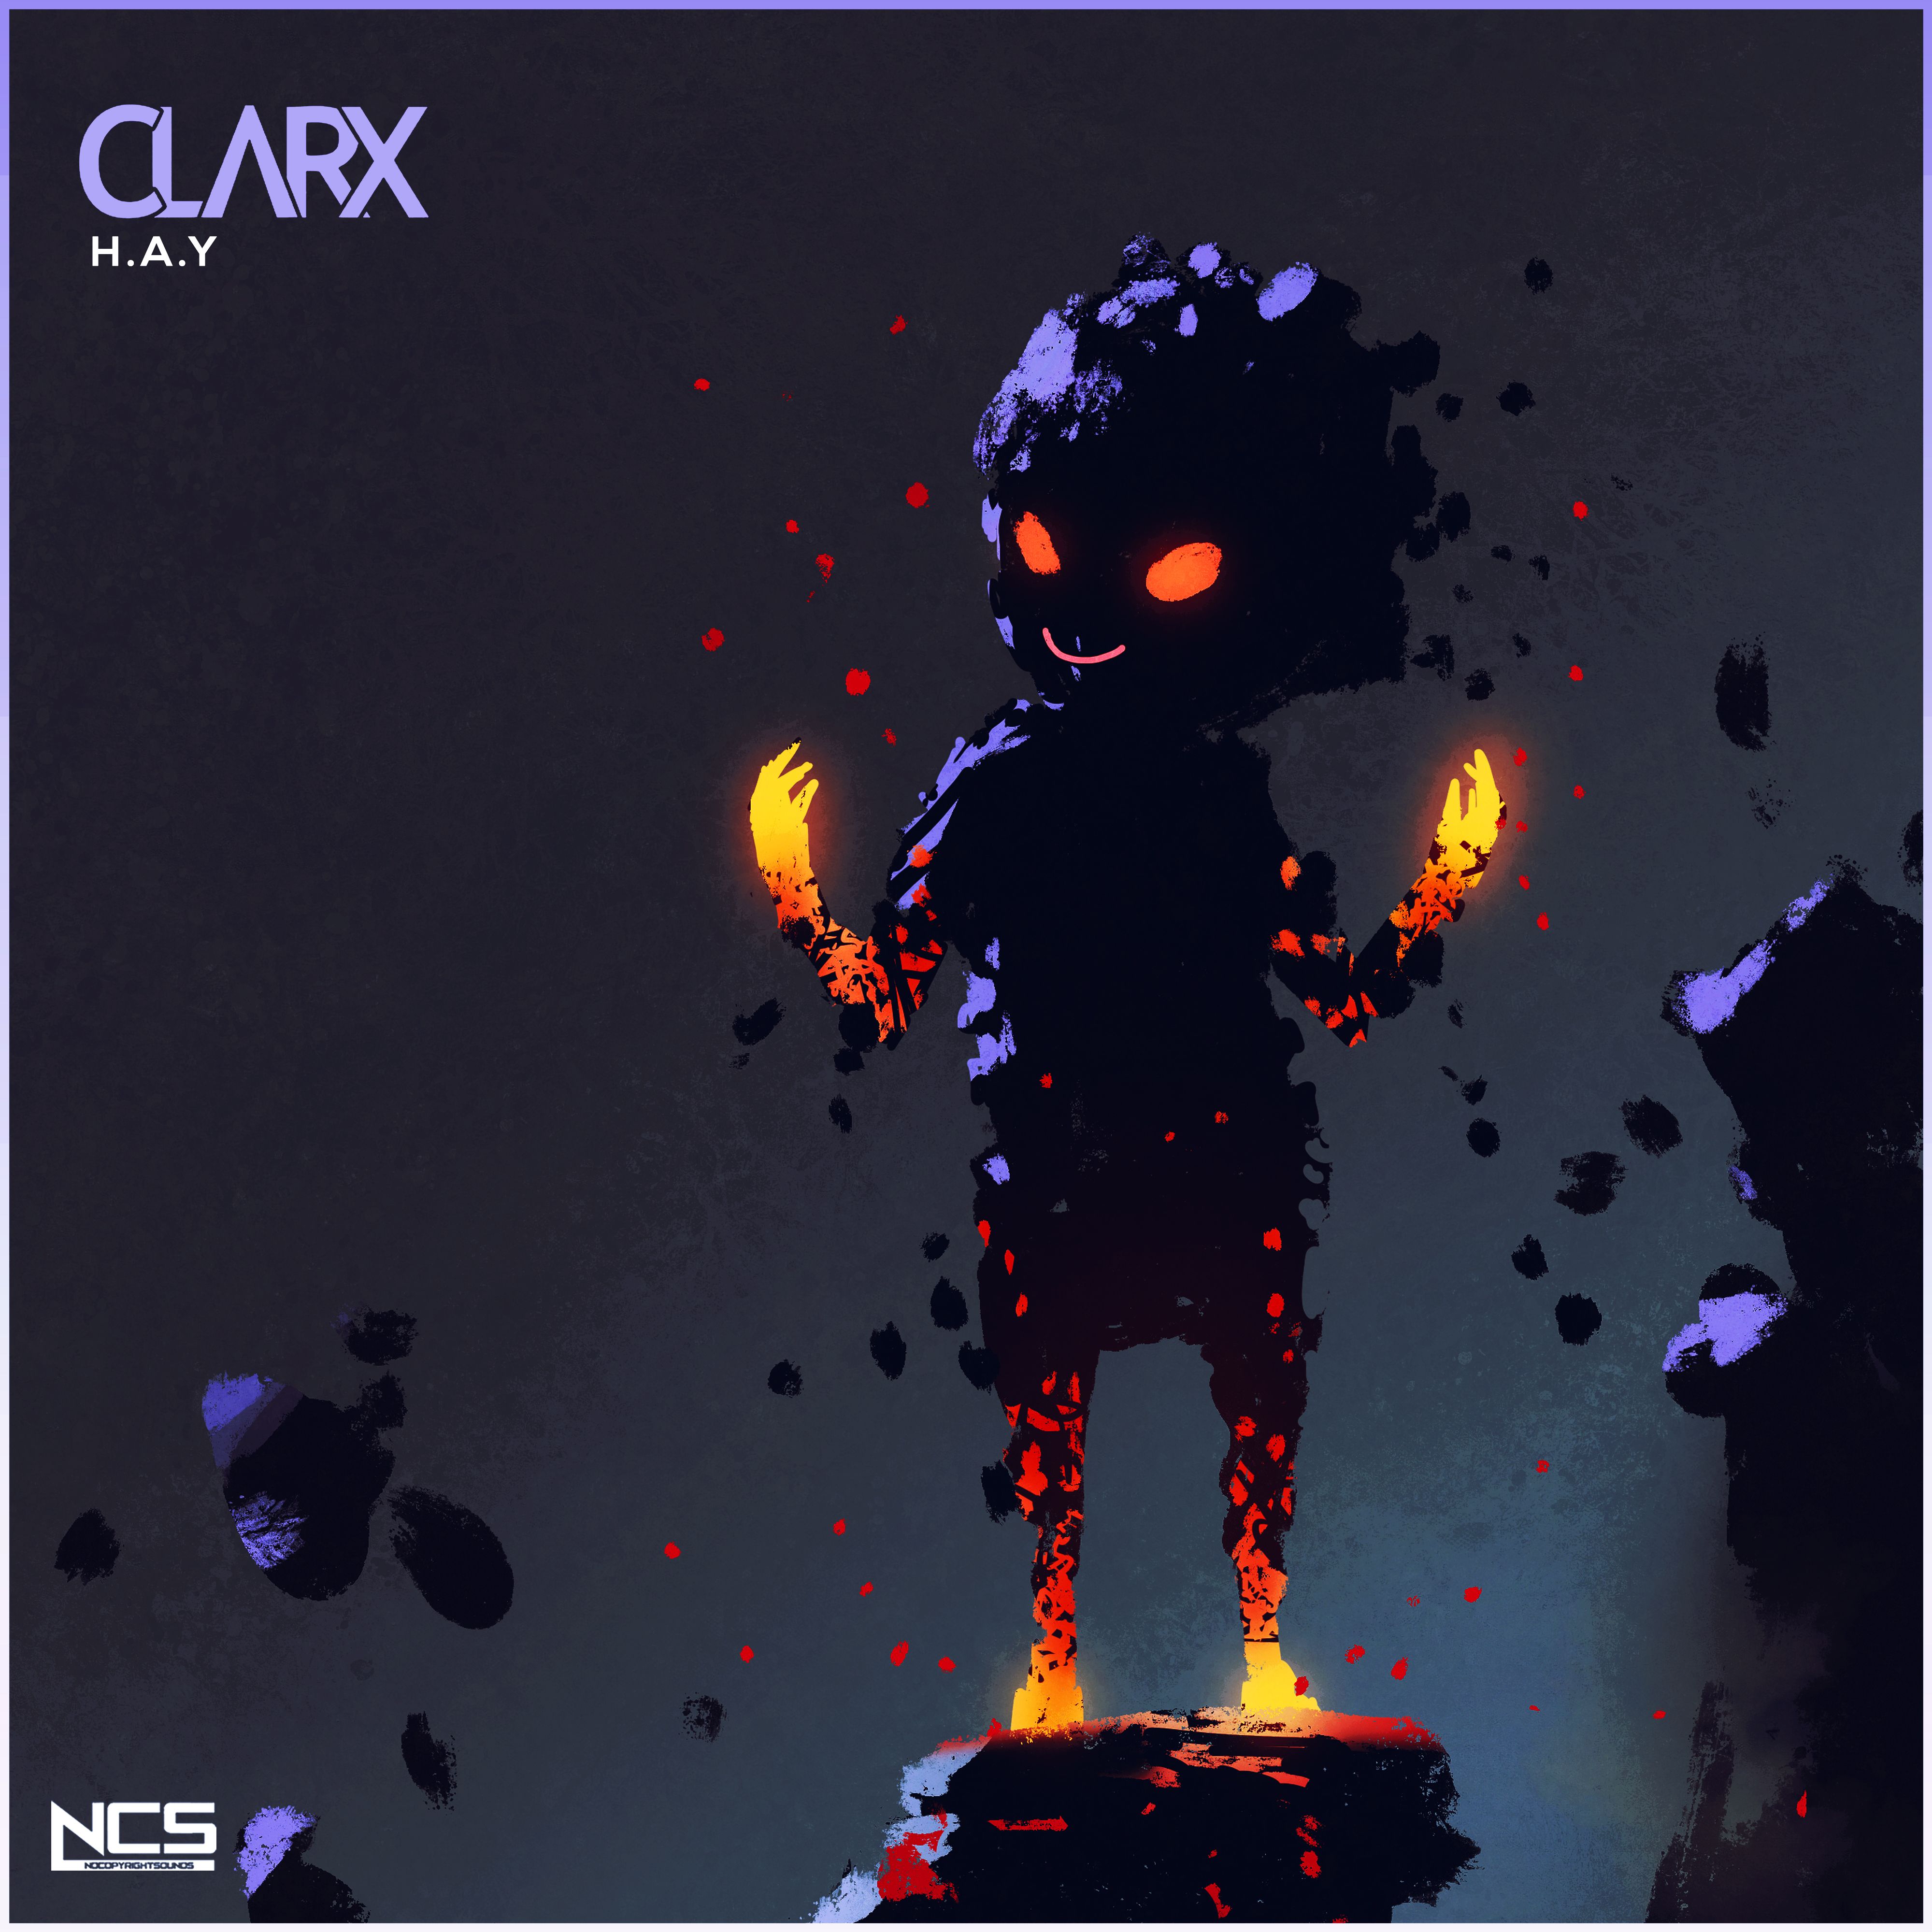 Herunterladen Clarx - H.A.Y [NCS Release]